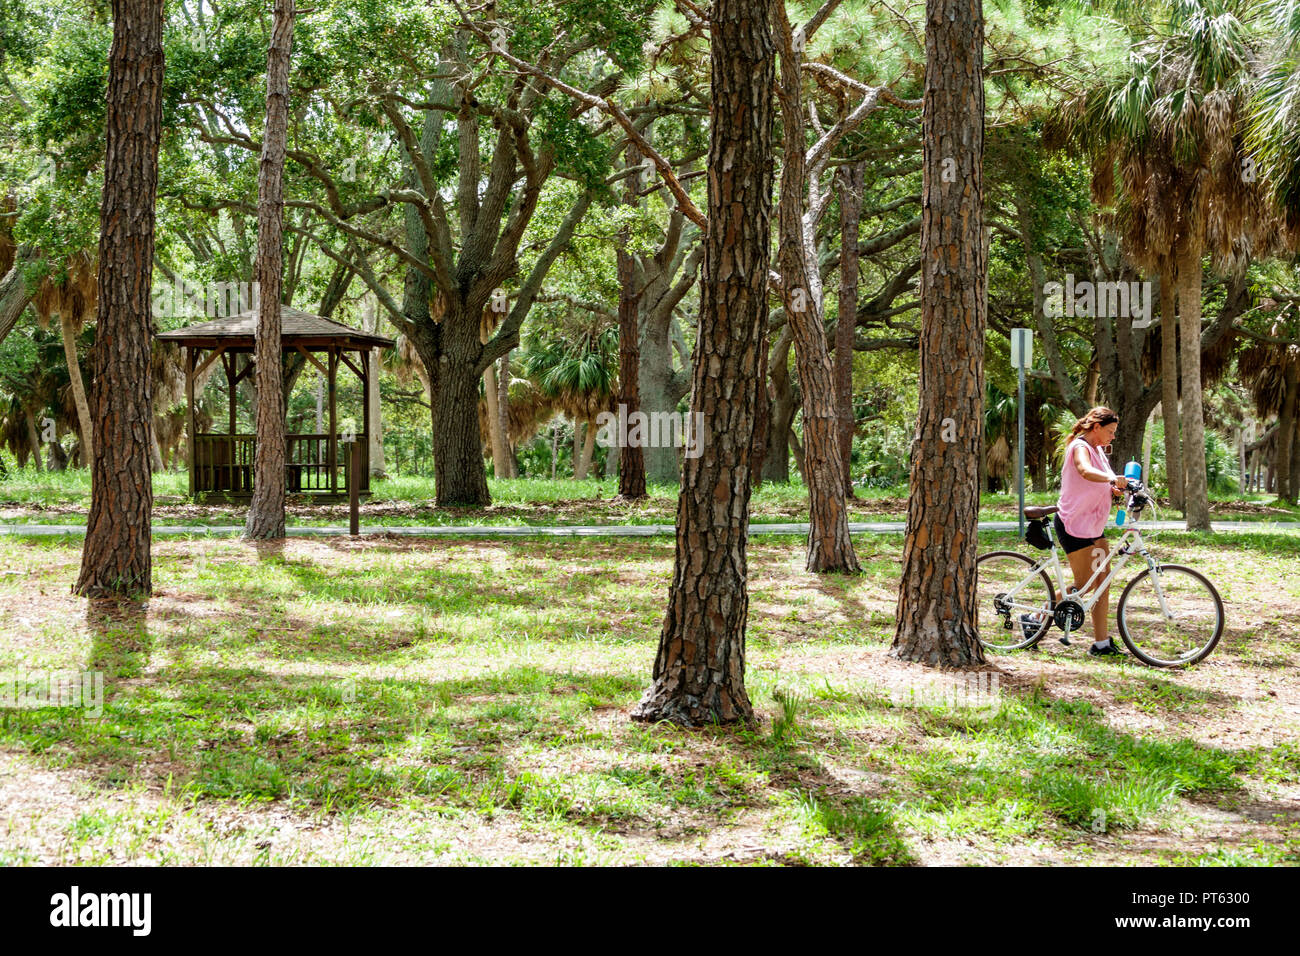 Saint-Pétersbourg Floride, Bay Water Pines, War Veterans Memorial Park, adultes femme femme femme femme dame, vélo vélos vélo vélo vélo équitation Banque D'Images